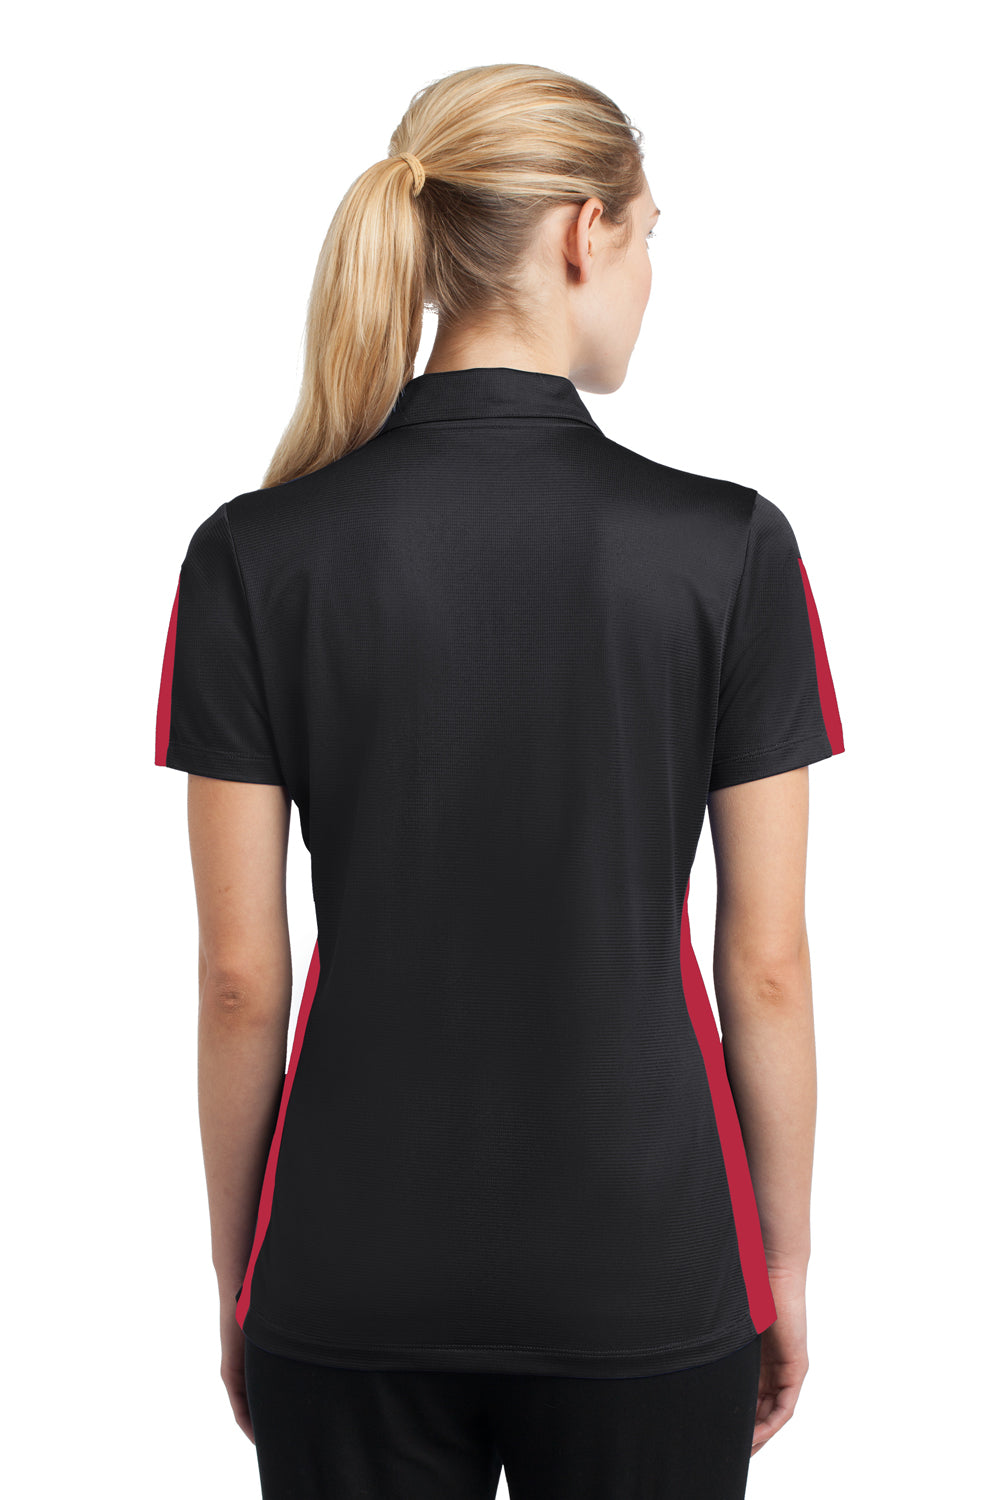 Sport-Tek LST695 Womens Active Mesh Moisture Wicking Short Sleeve Polo Shirt Black/Red Back